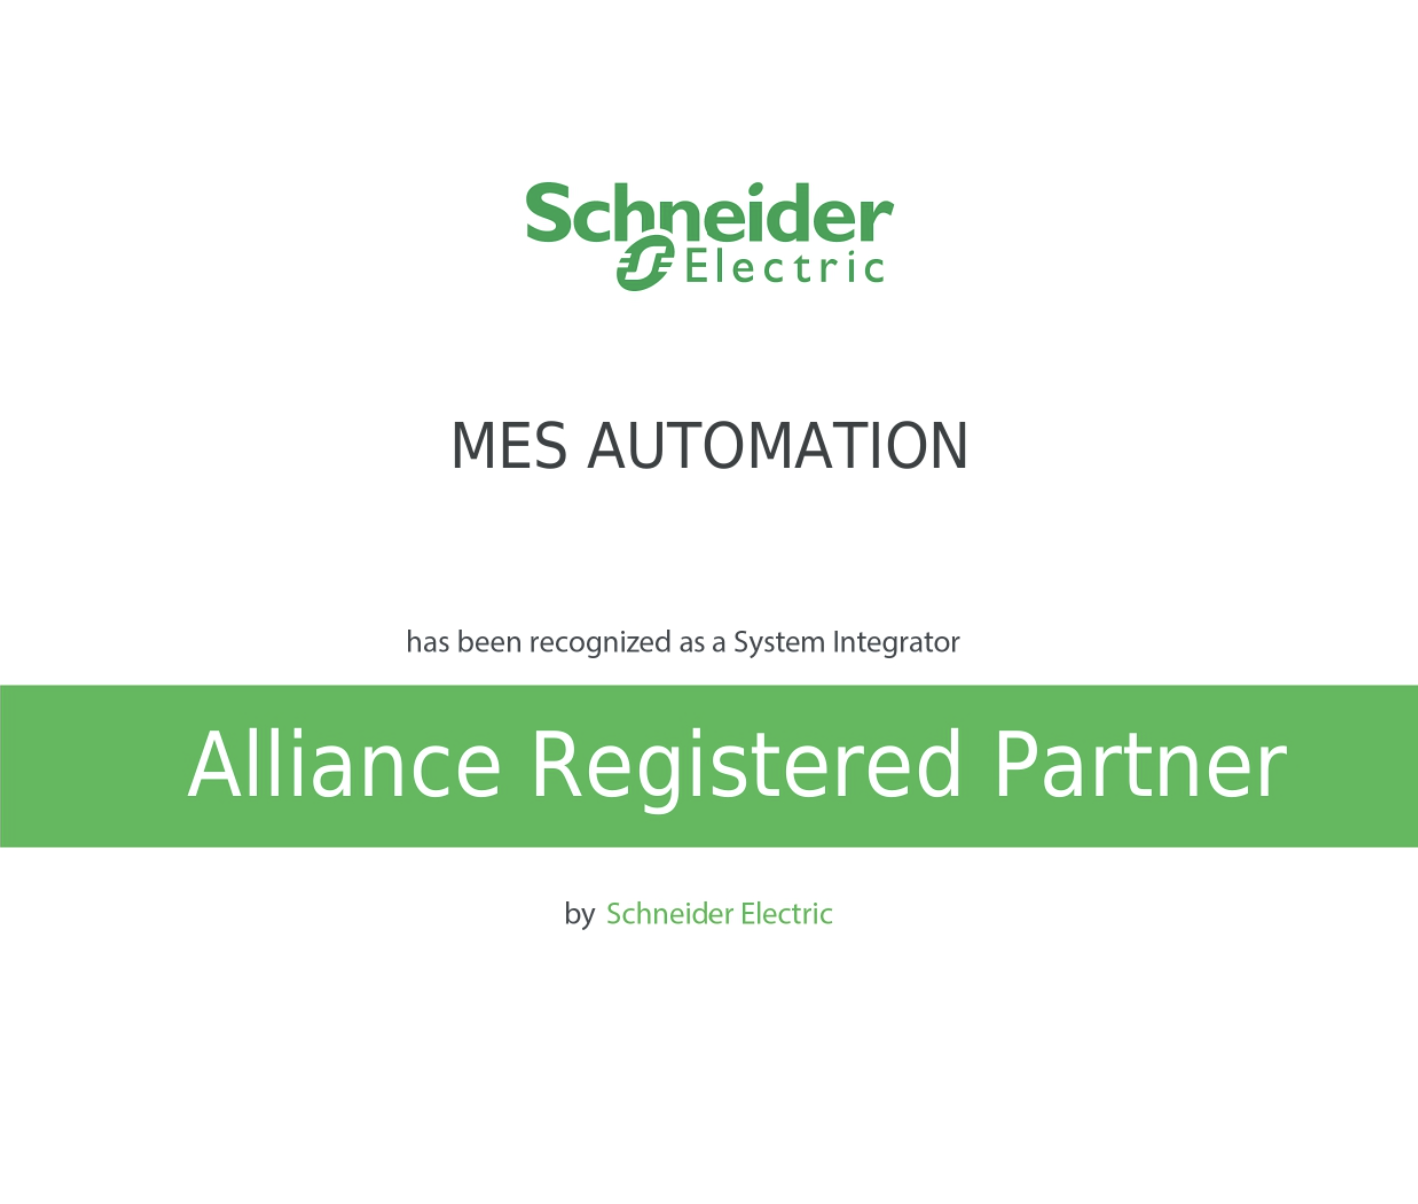 SOCIO COLABORADOR DE Schneider Electric como Alliance Registered Partner